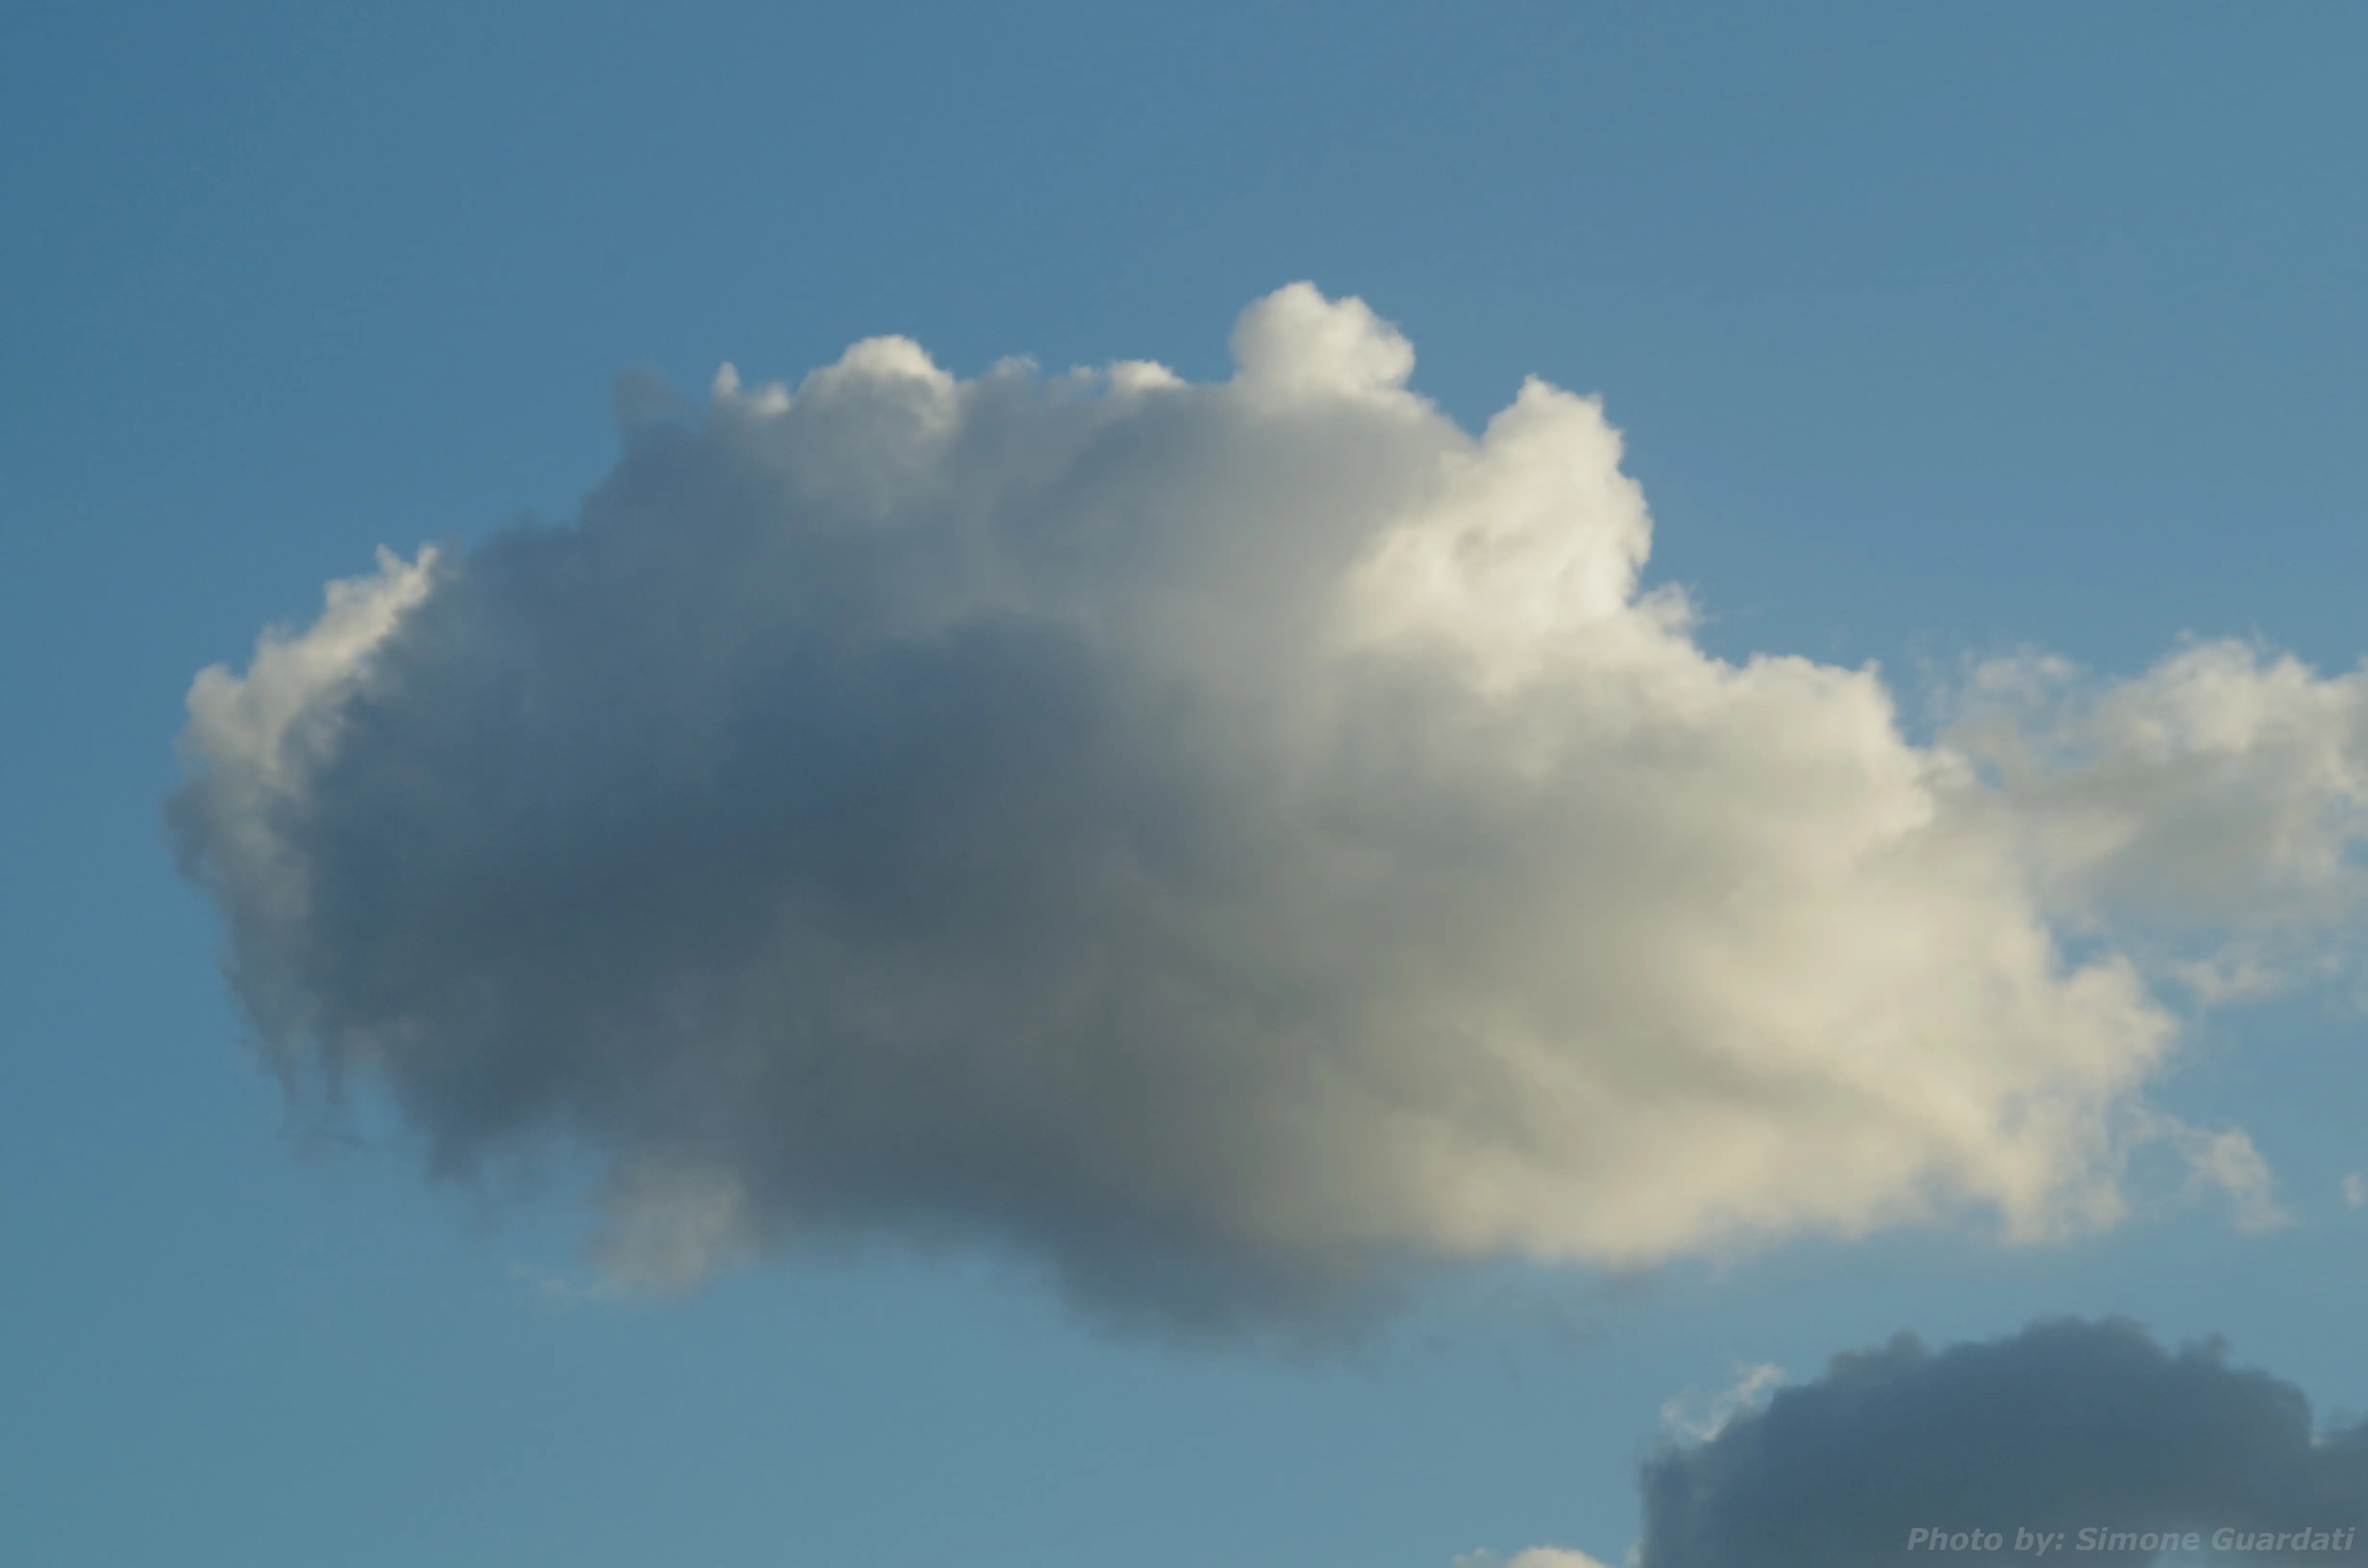 A cloud in the sky